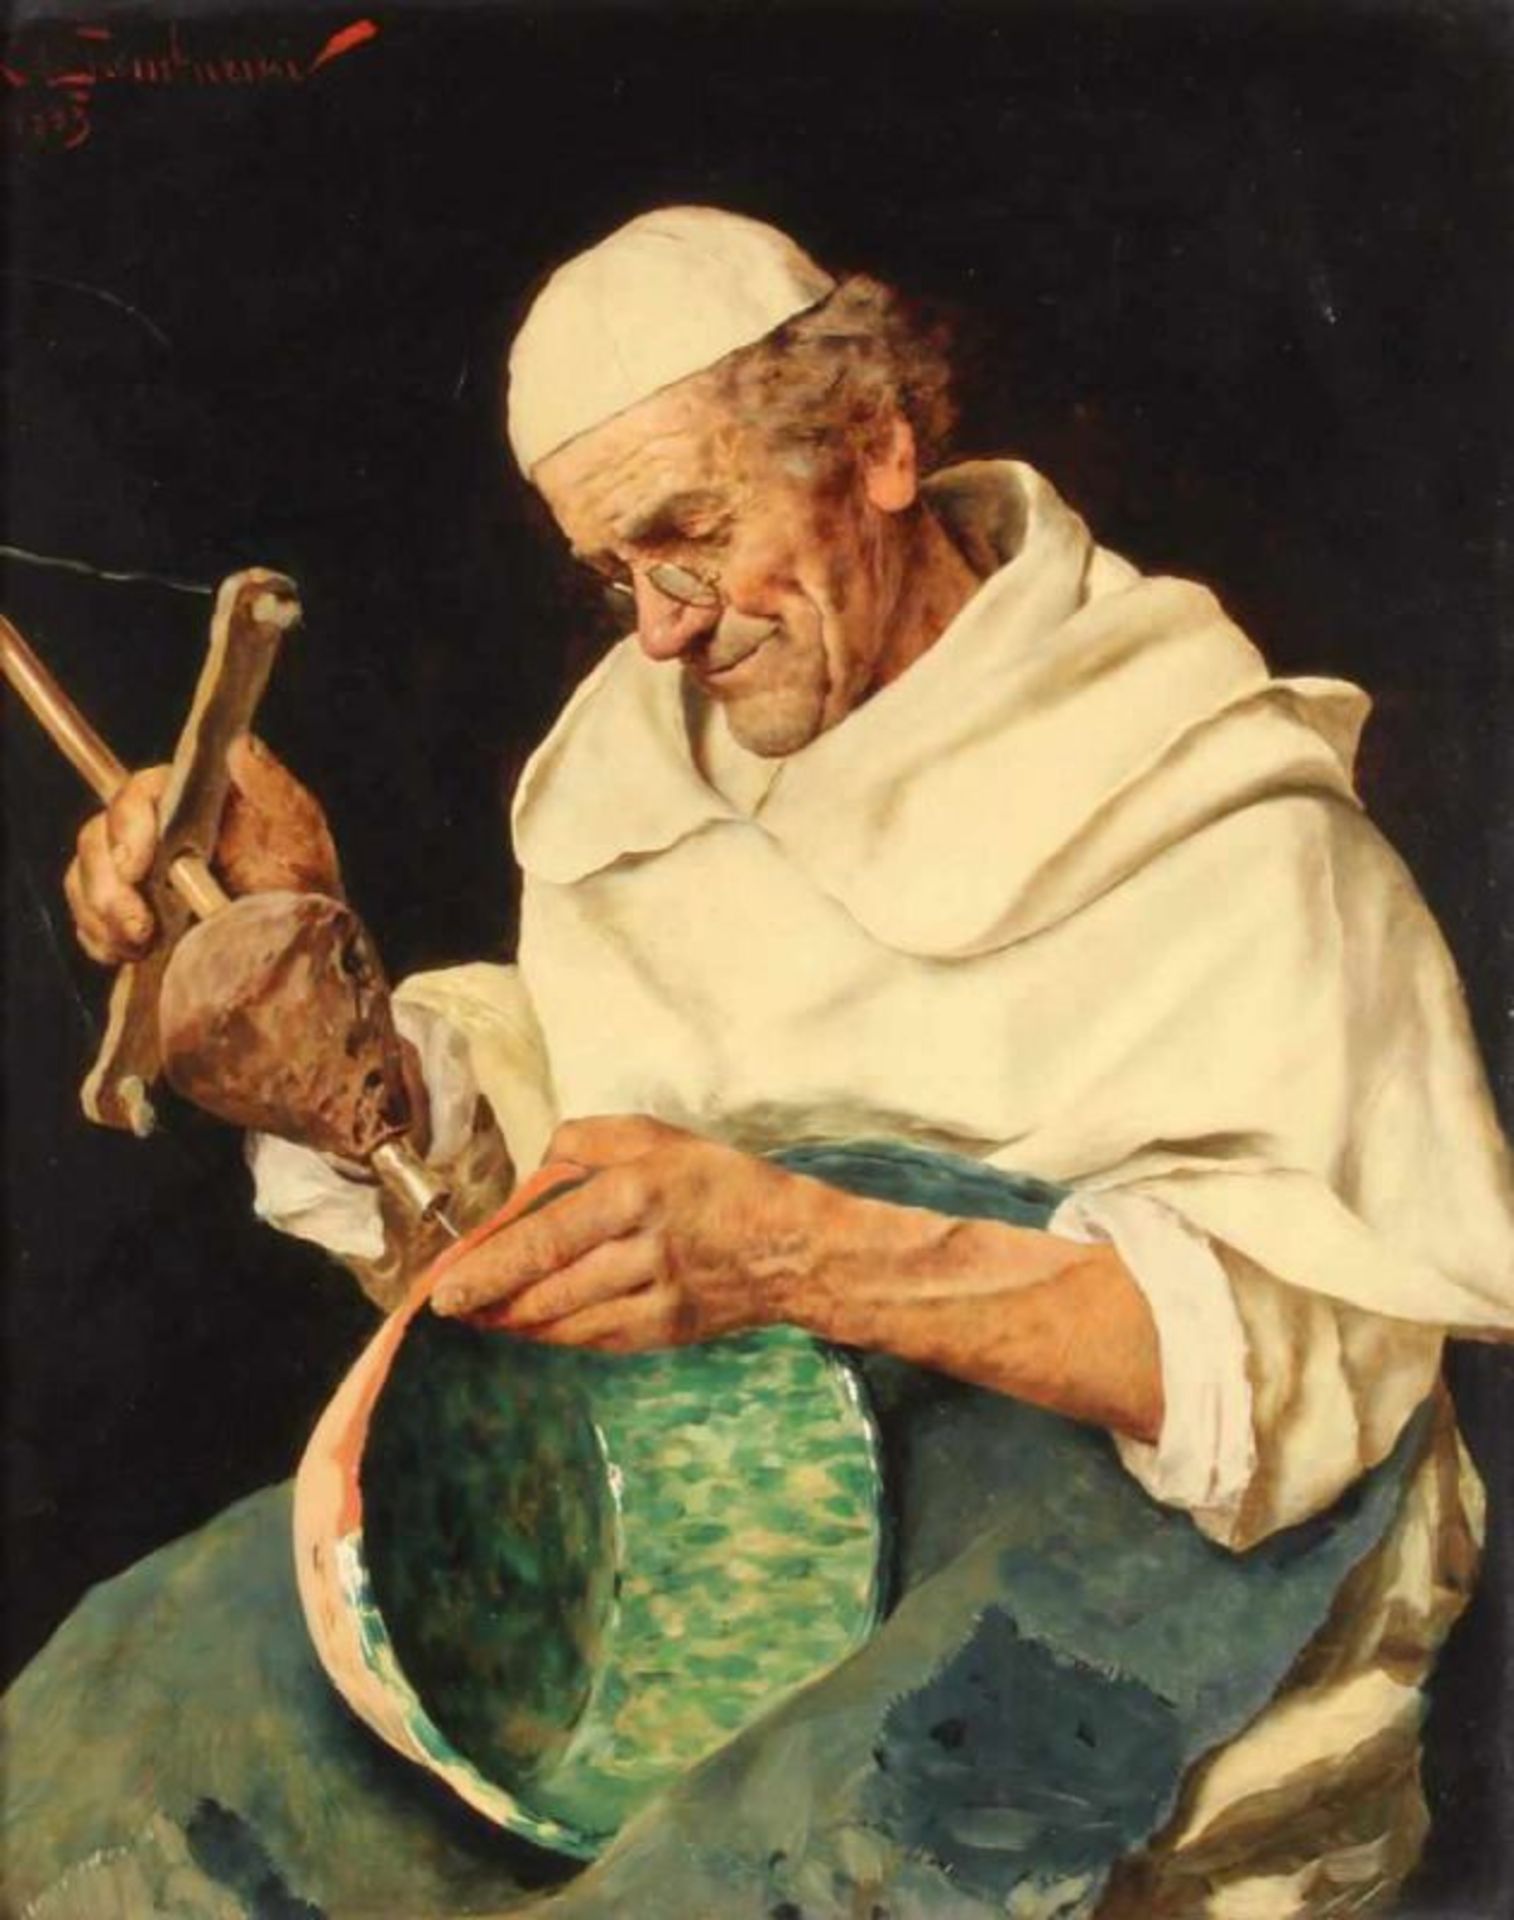 Tamburini, Arnaldo (1843 Florenz - 1908, in Florenz tätiger Genre- und Bildnismaler), "Mönch mit